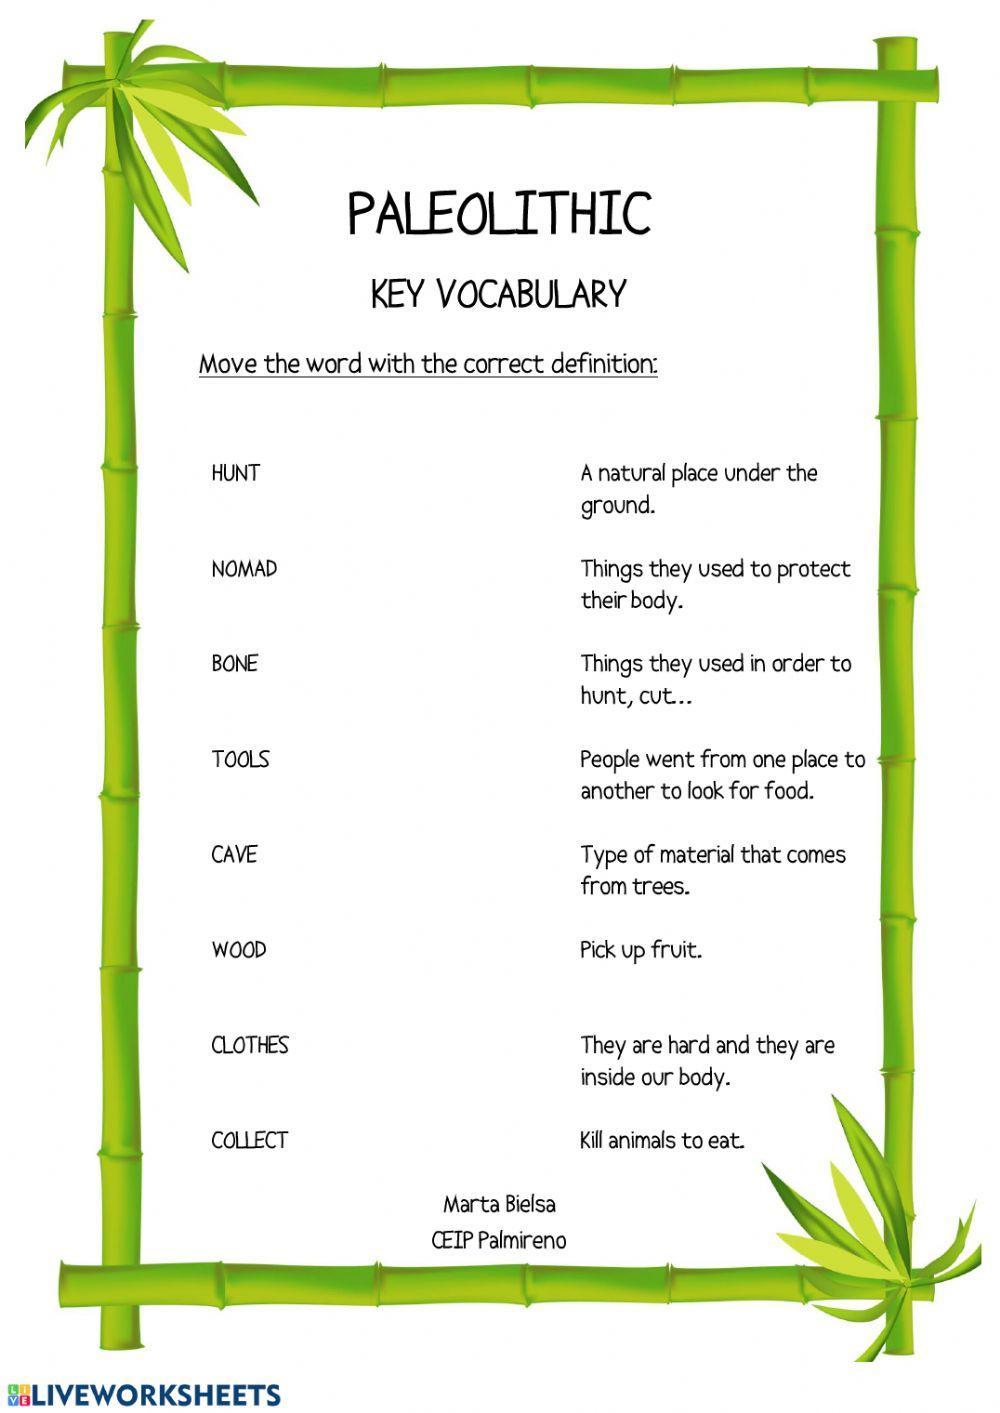 Paleolithic key vocabulary